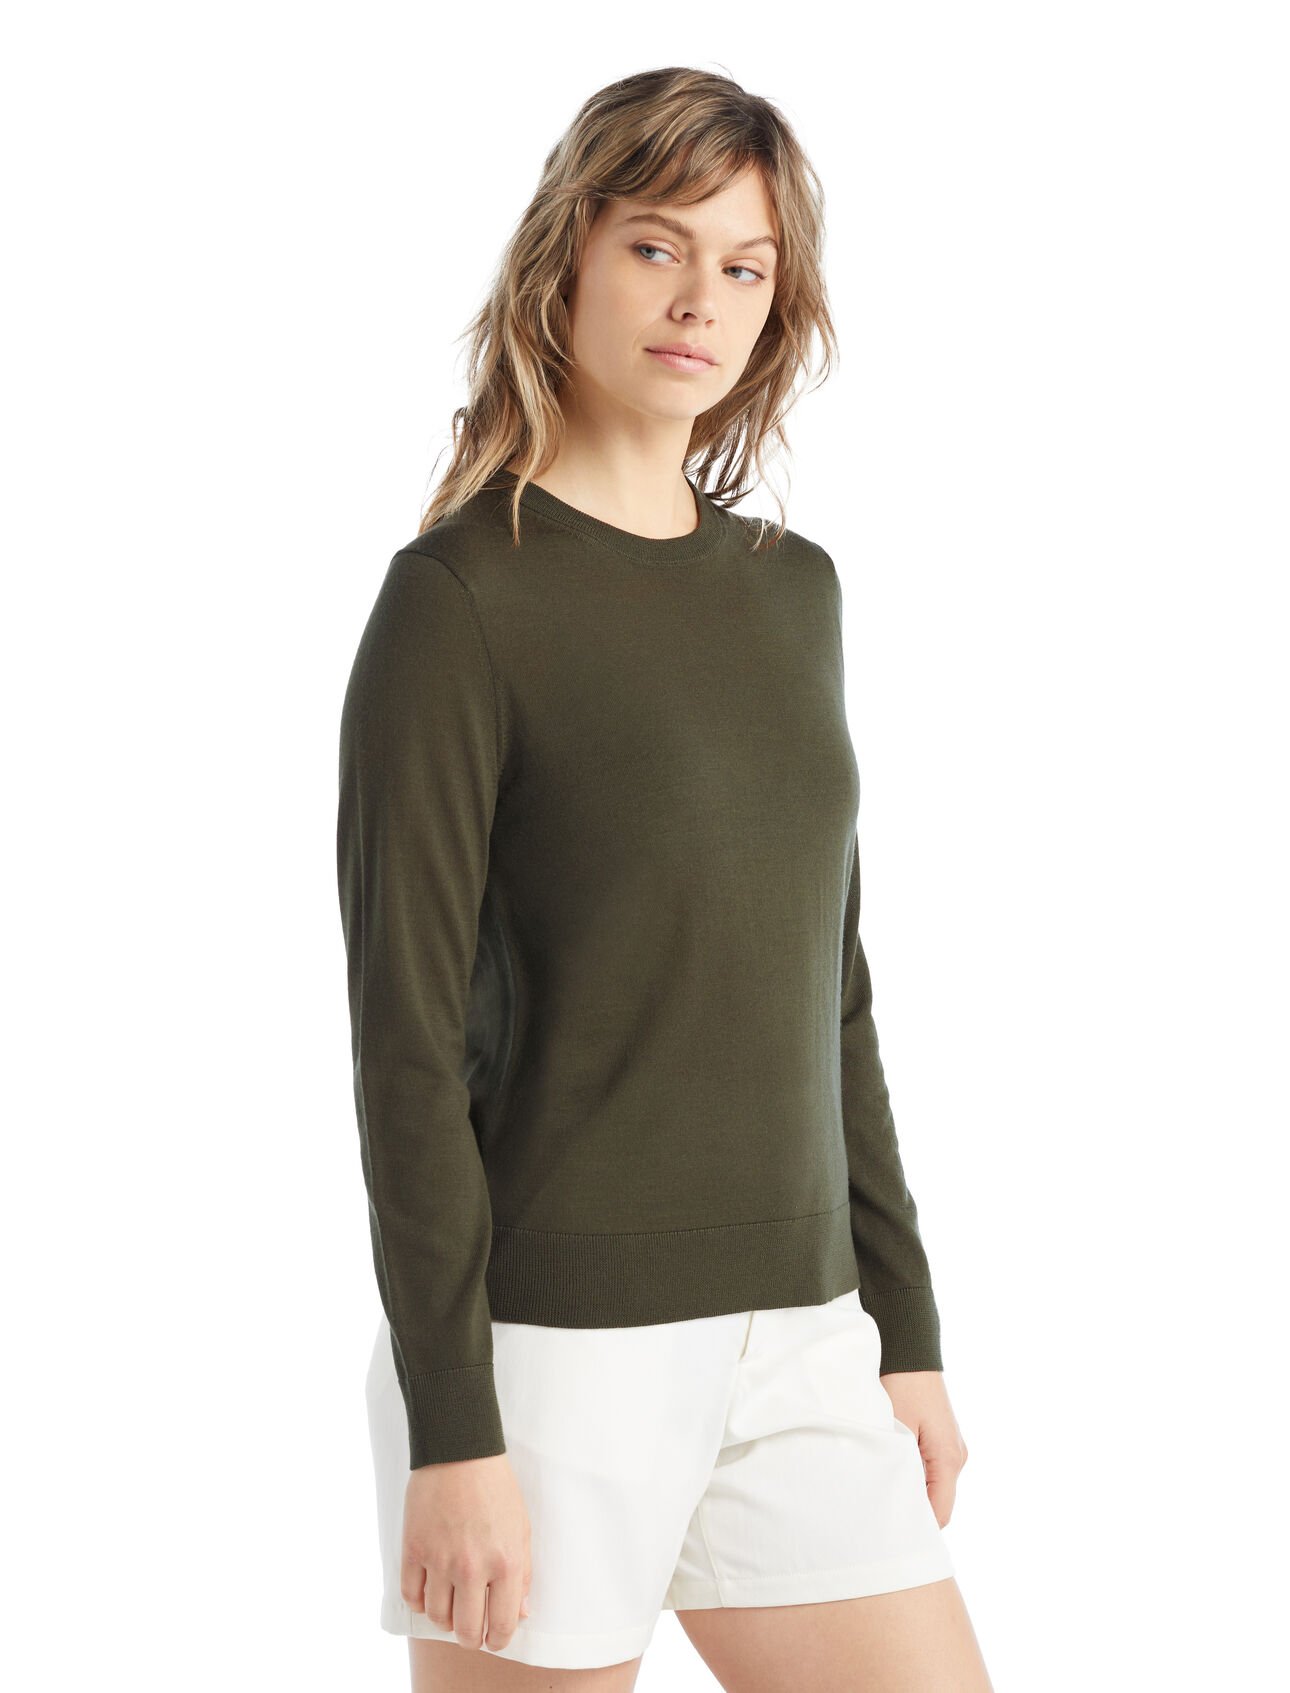 dla kobiet Sweter Wilcox z długim rękawem z wełny merino  Klasyczny sweter na co dzień wykonany z niezwykle cienkiej wełny merino, która zapewnia niezrównaną miękkość. Sweter Wilcox z długim rękawem doskonale sprawdzi się w dni, kiedy potrzebujesz lekkiej dodatkowej warstwy.